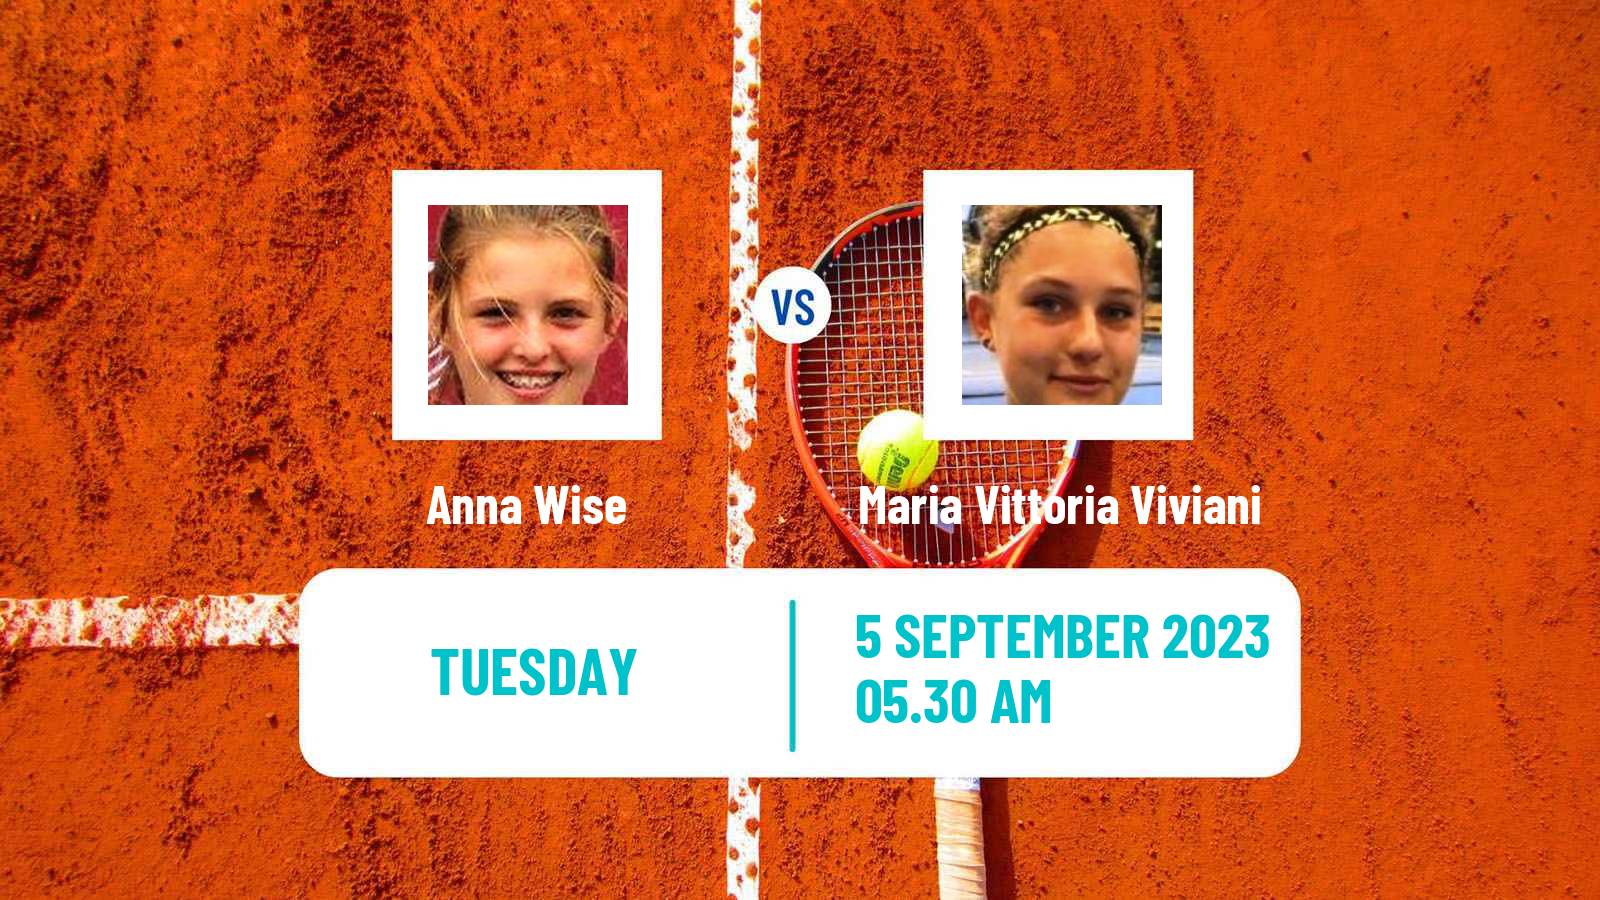 Tennis ITF W15 Monastir 31 Women Anna Wise - Maria Vittoria Viviani